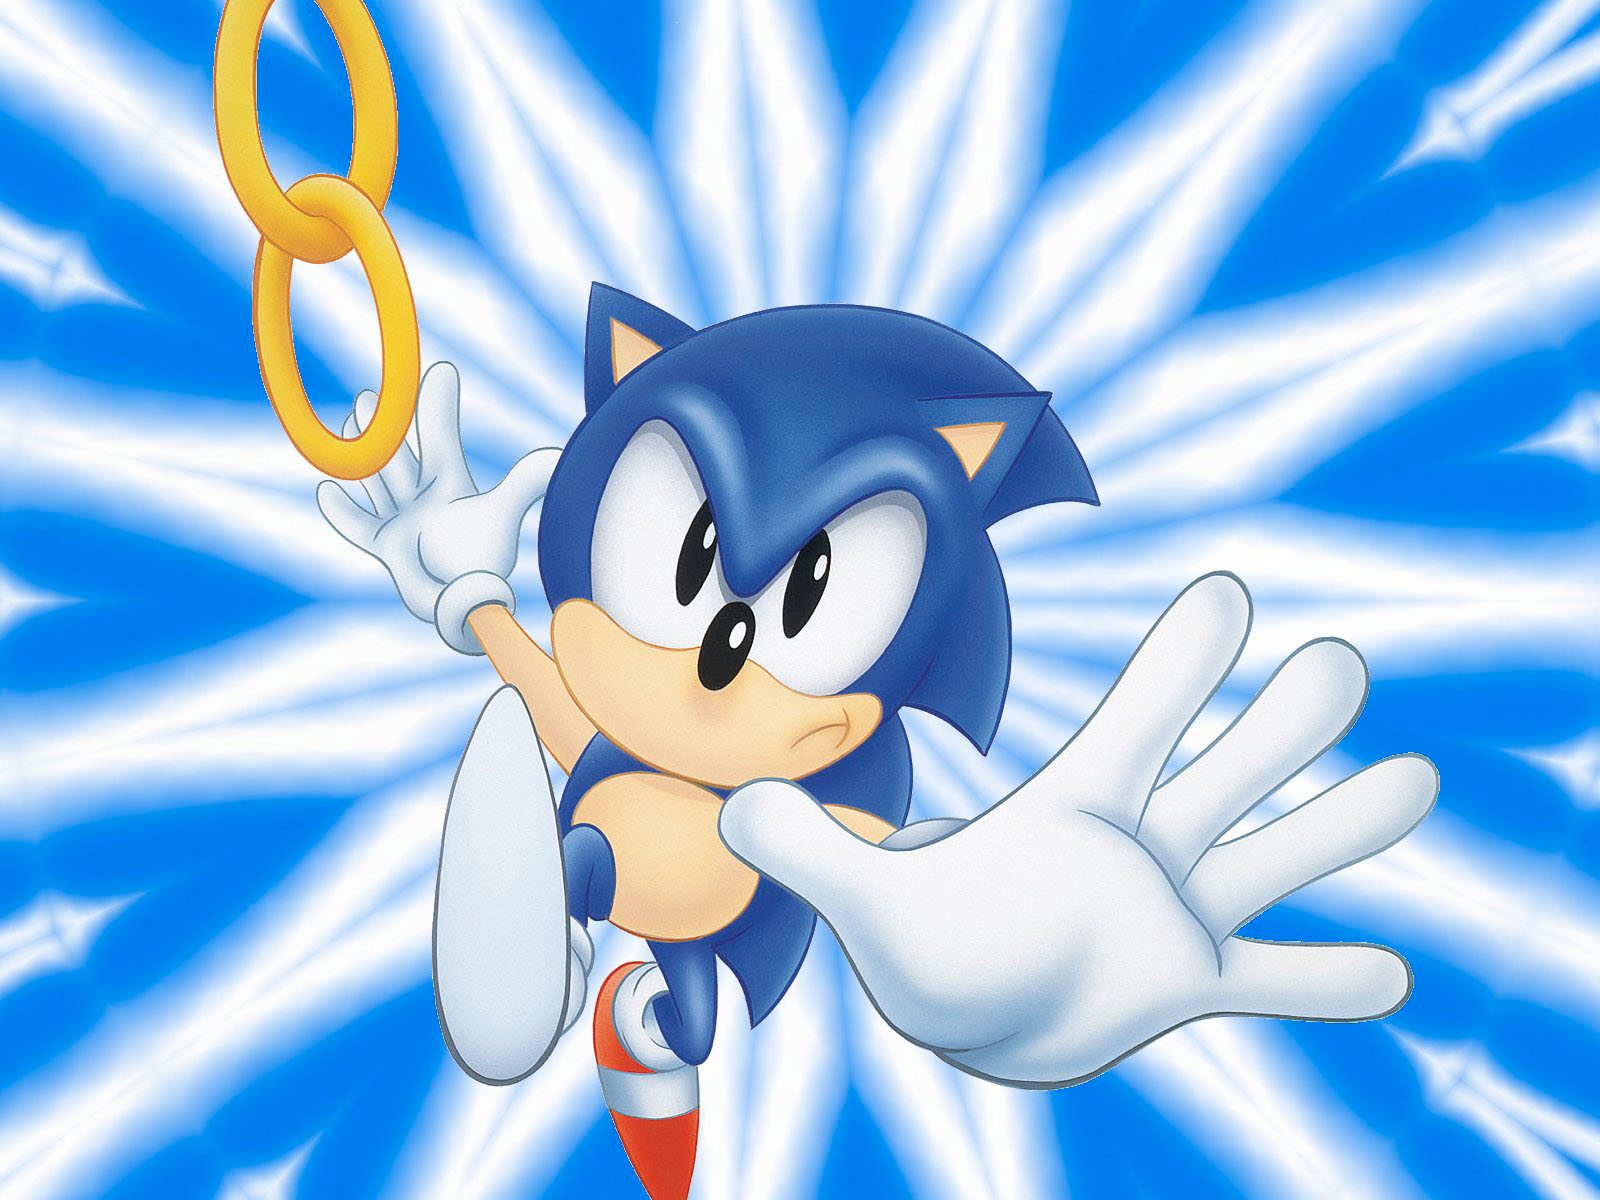 Kikizo: Review: Sonic the Hedgehog (2006)